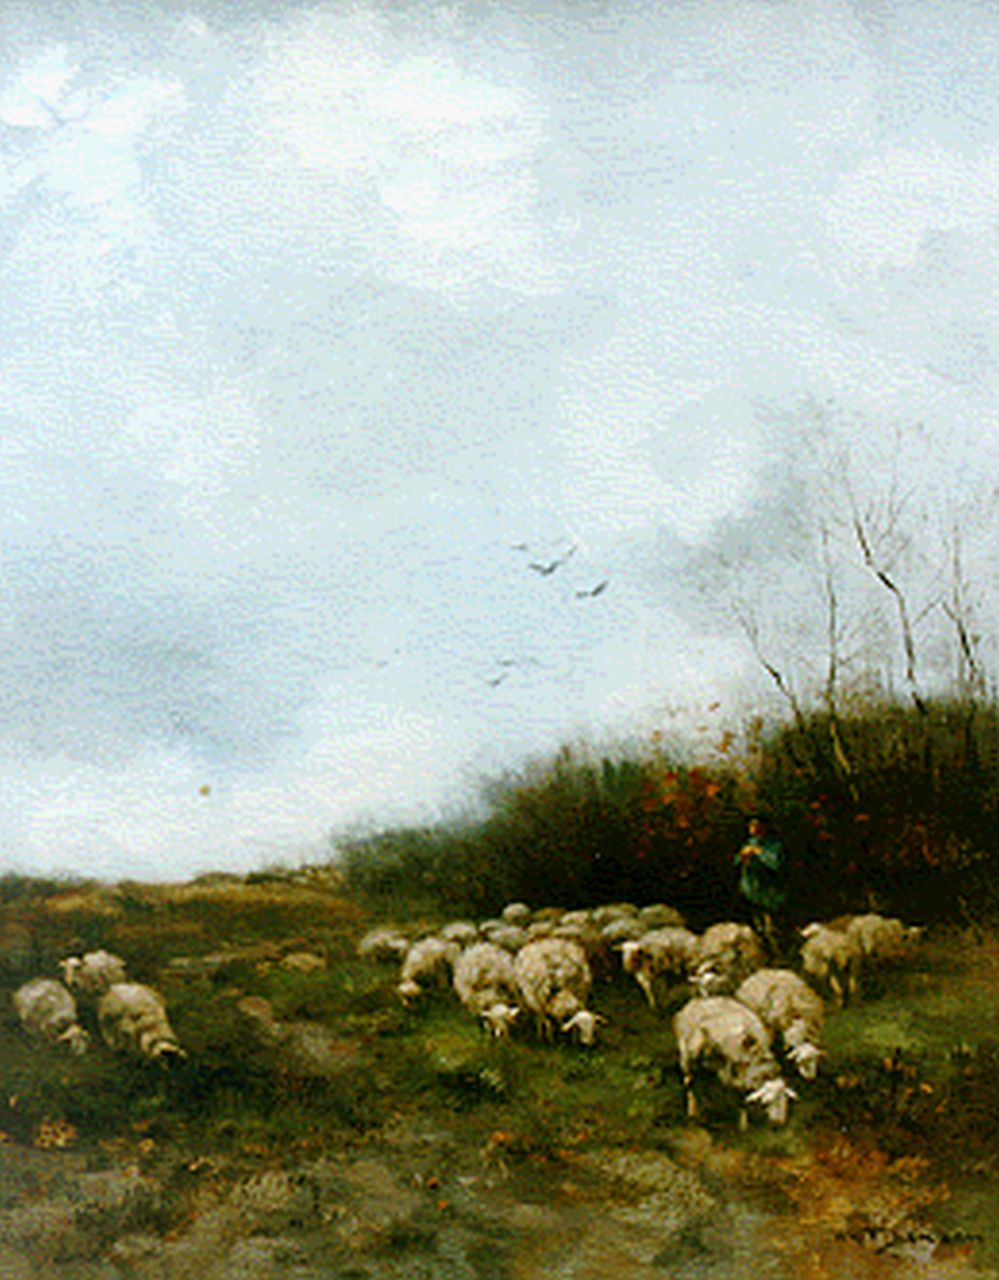 Jansen W.G.F.  | 'Willem' George Frederik Jansen, A shepherd with his flock, Öl auf Leinwand 55,0 x 45,0 cm, signed l.r.